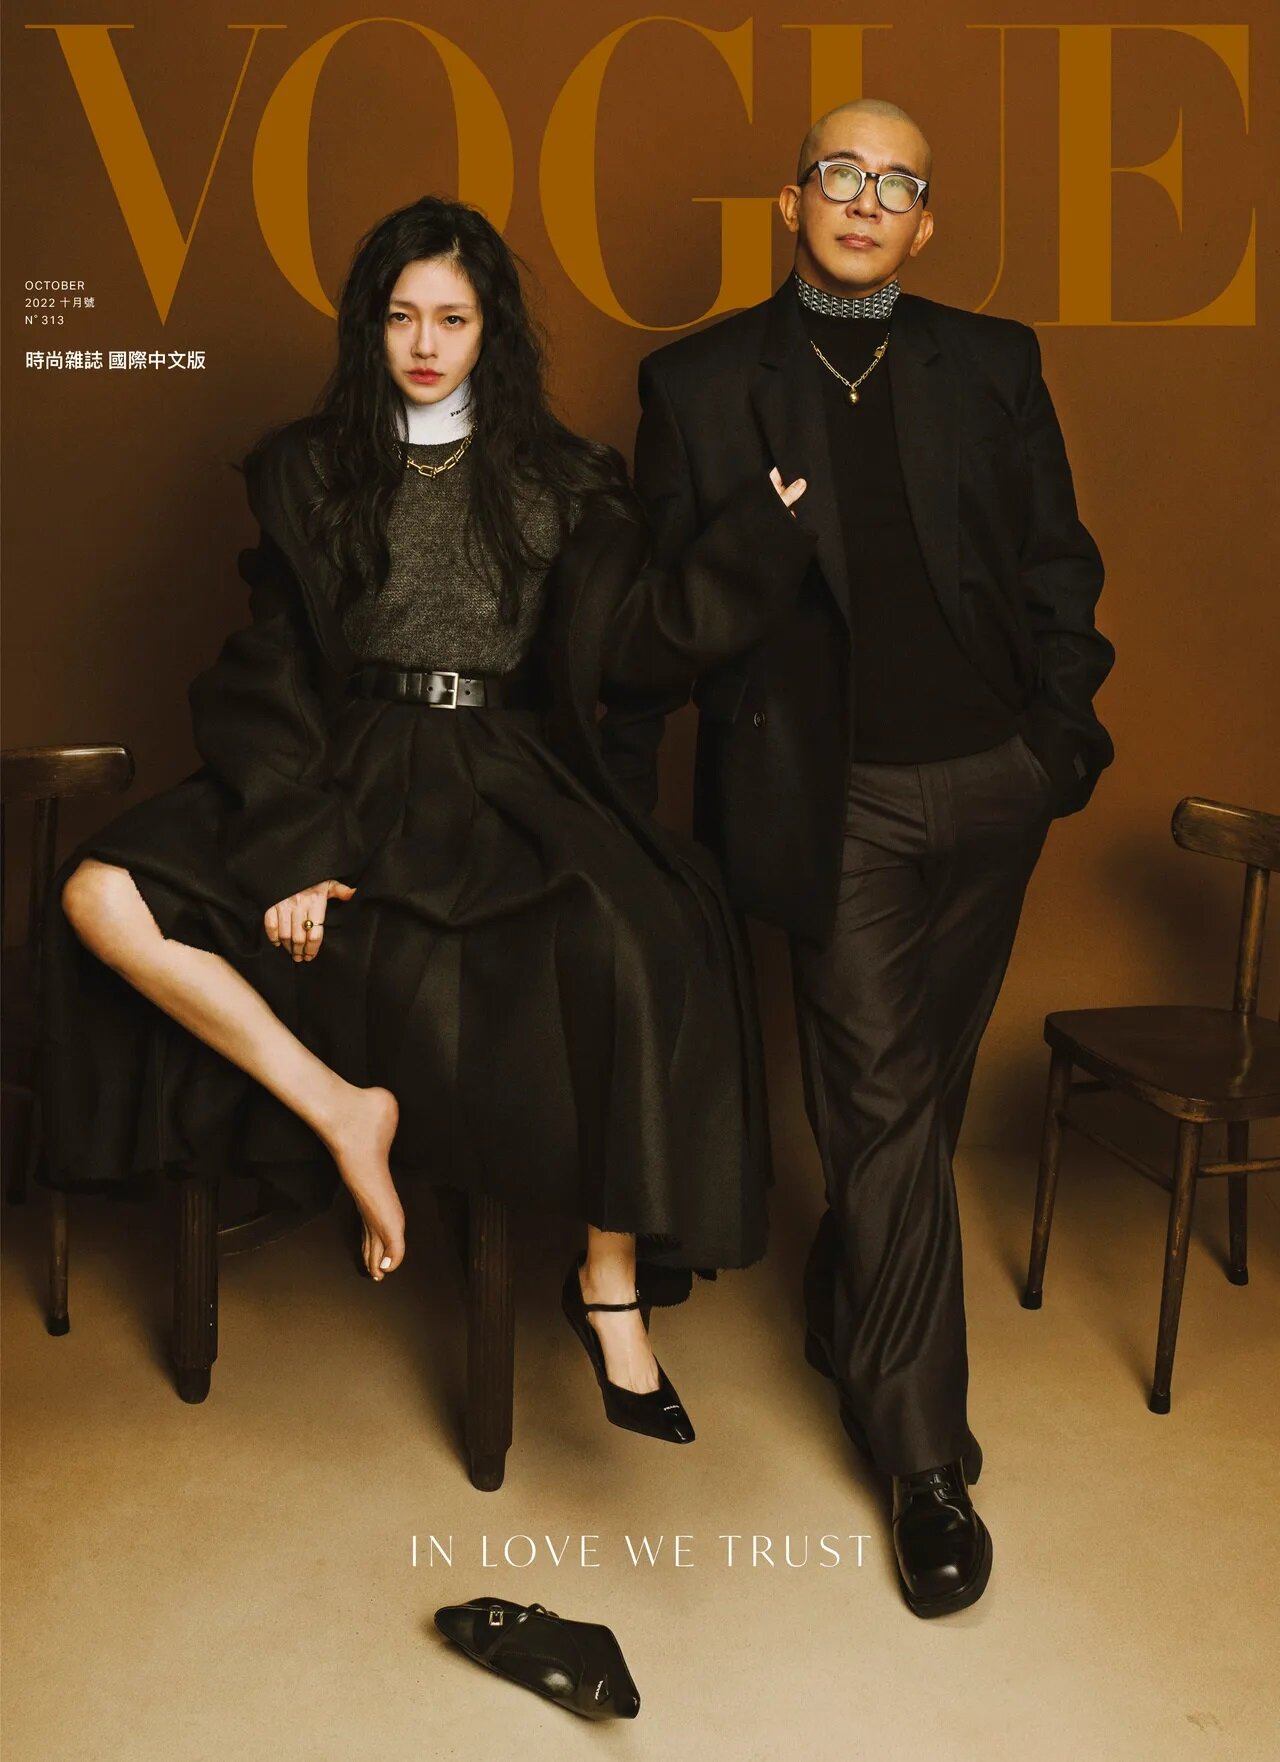 Vogue Taiwan (월간) 2022년 10월 보그 대만판 - 서희원, 구준엽 (徐熙媛, 具俊曄)